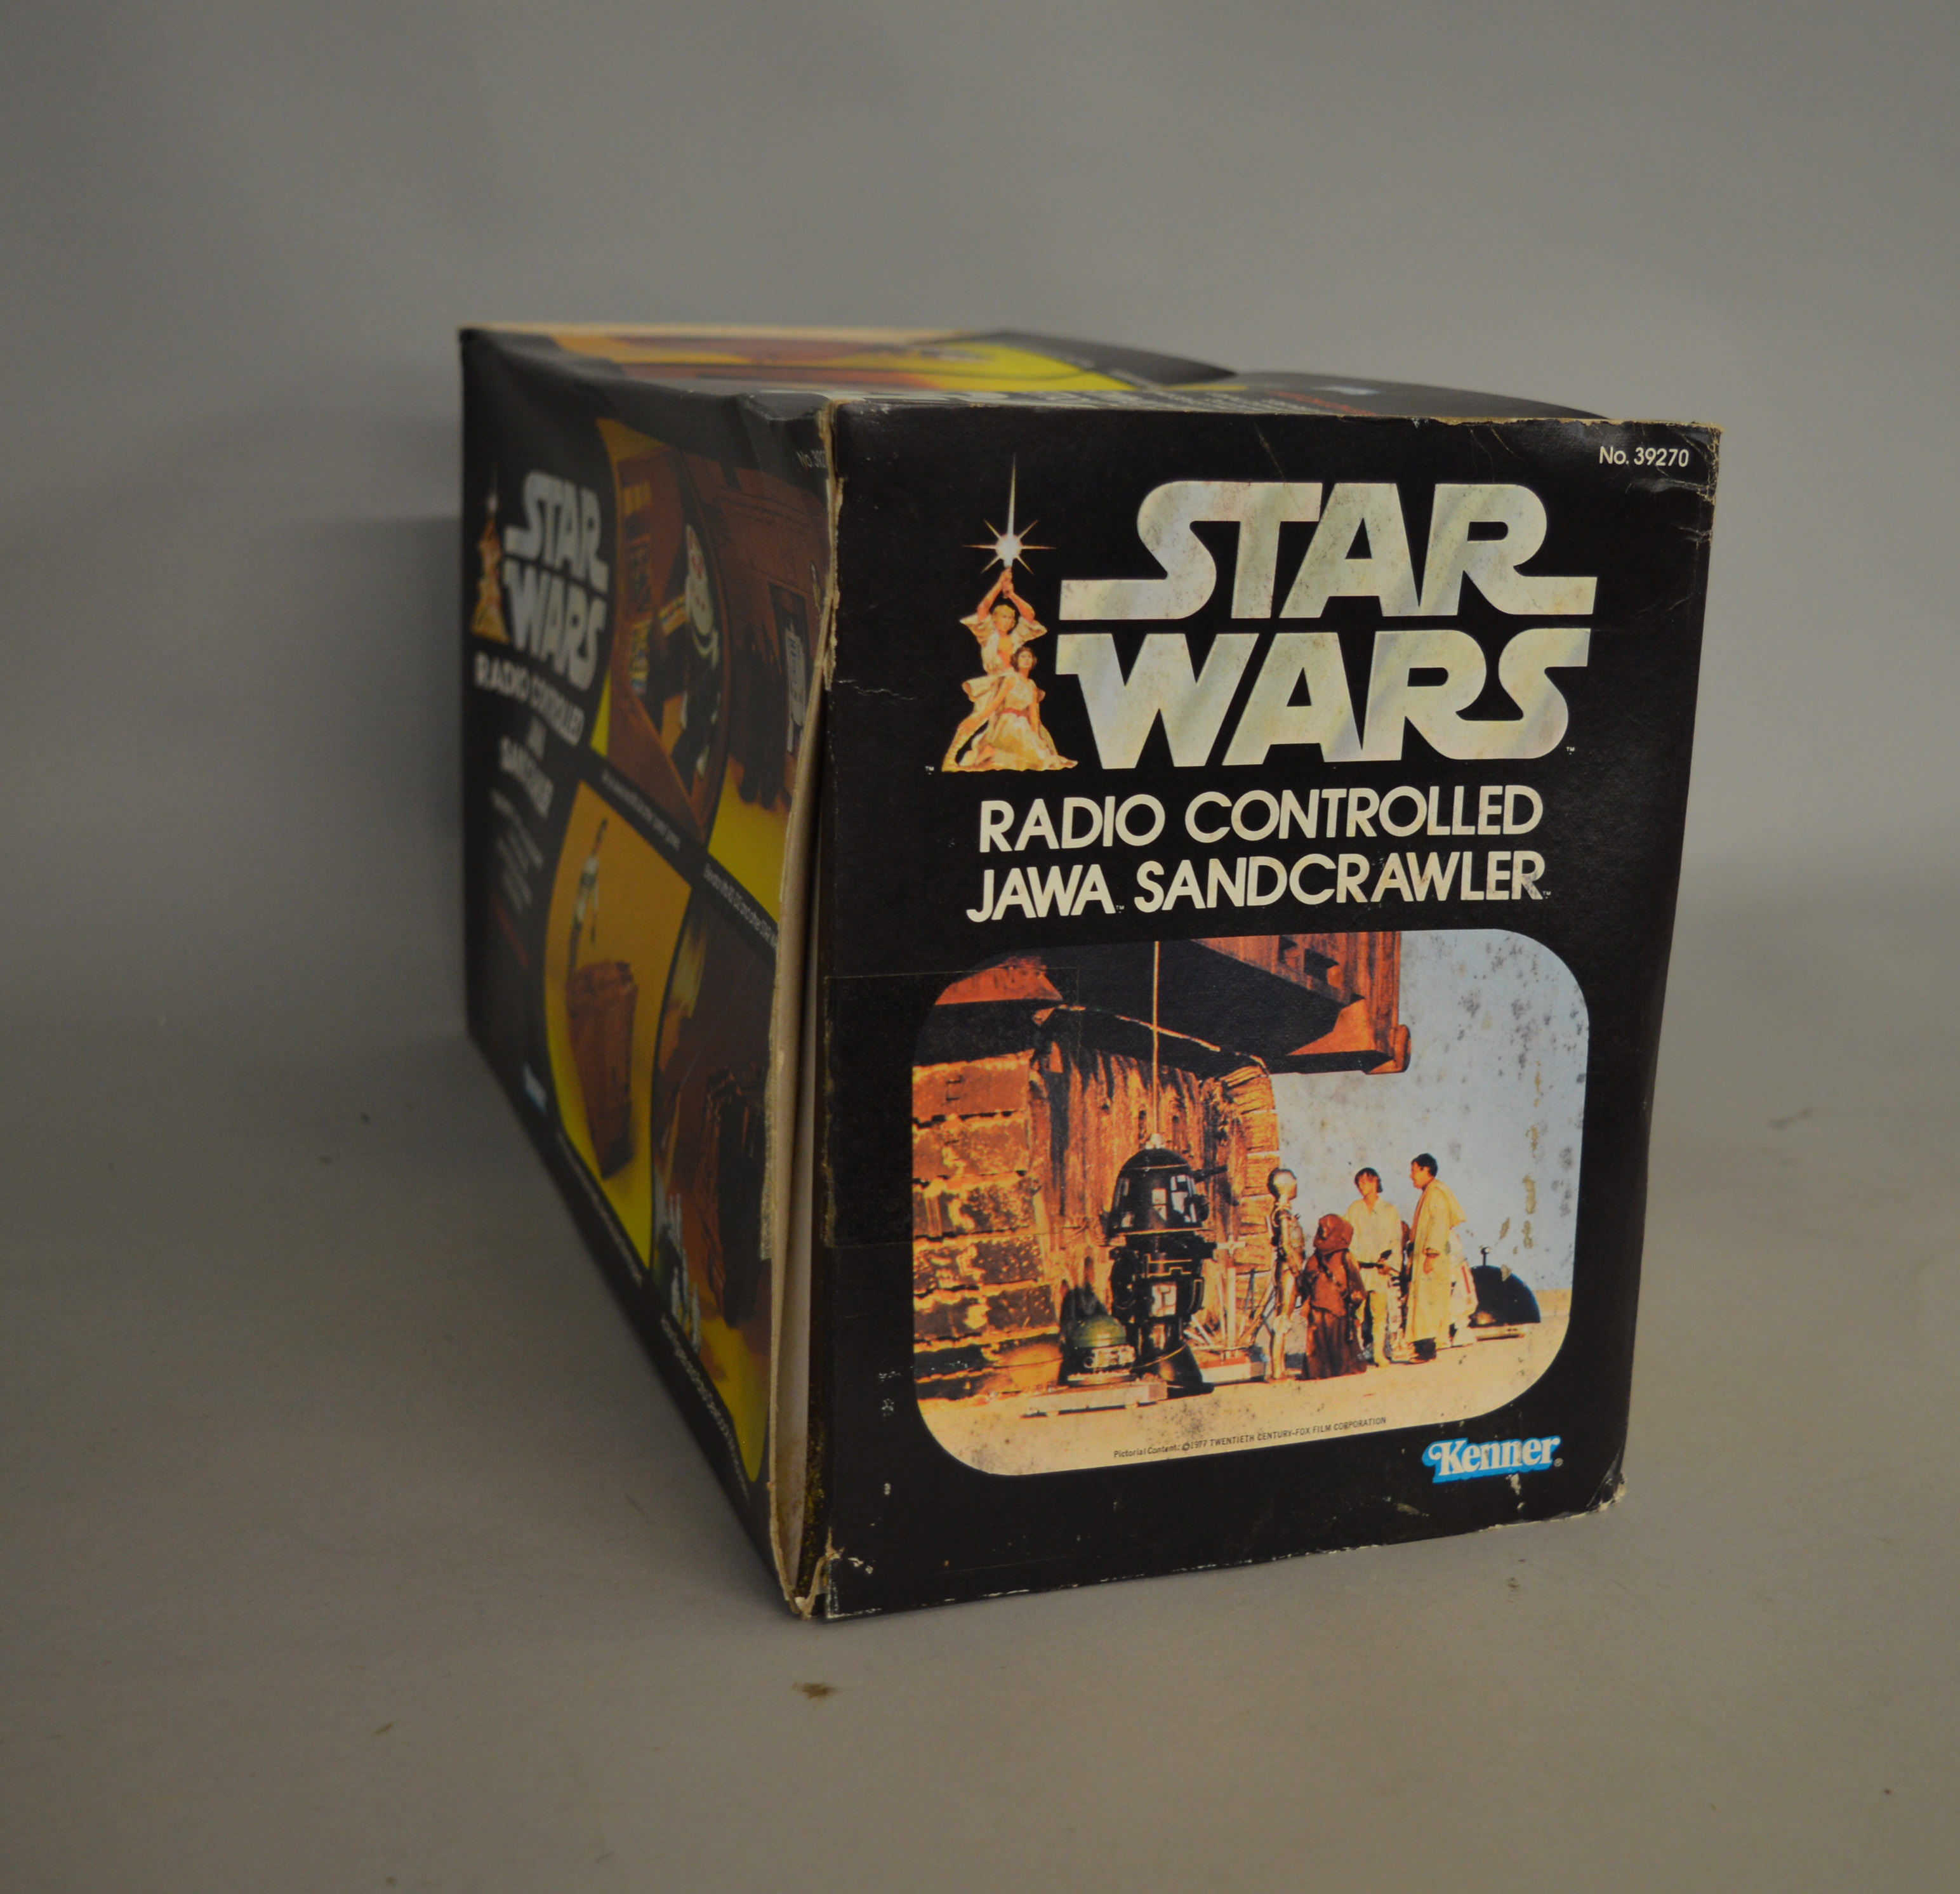 Kenner Star Wars 39270 Radio Controlled Jawa Sandcrawler in original box. - Image 4 of 8